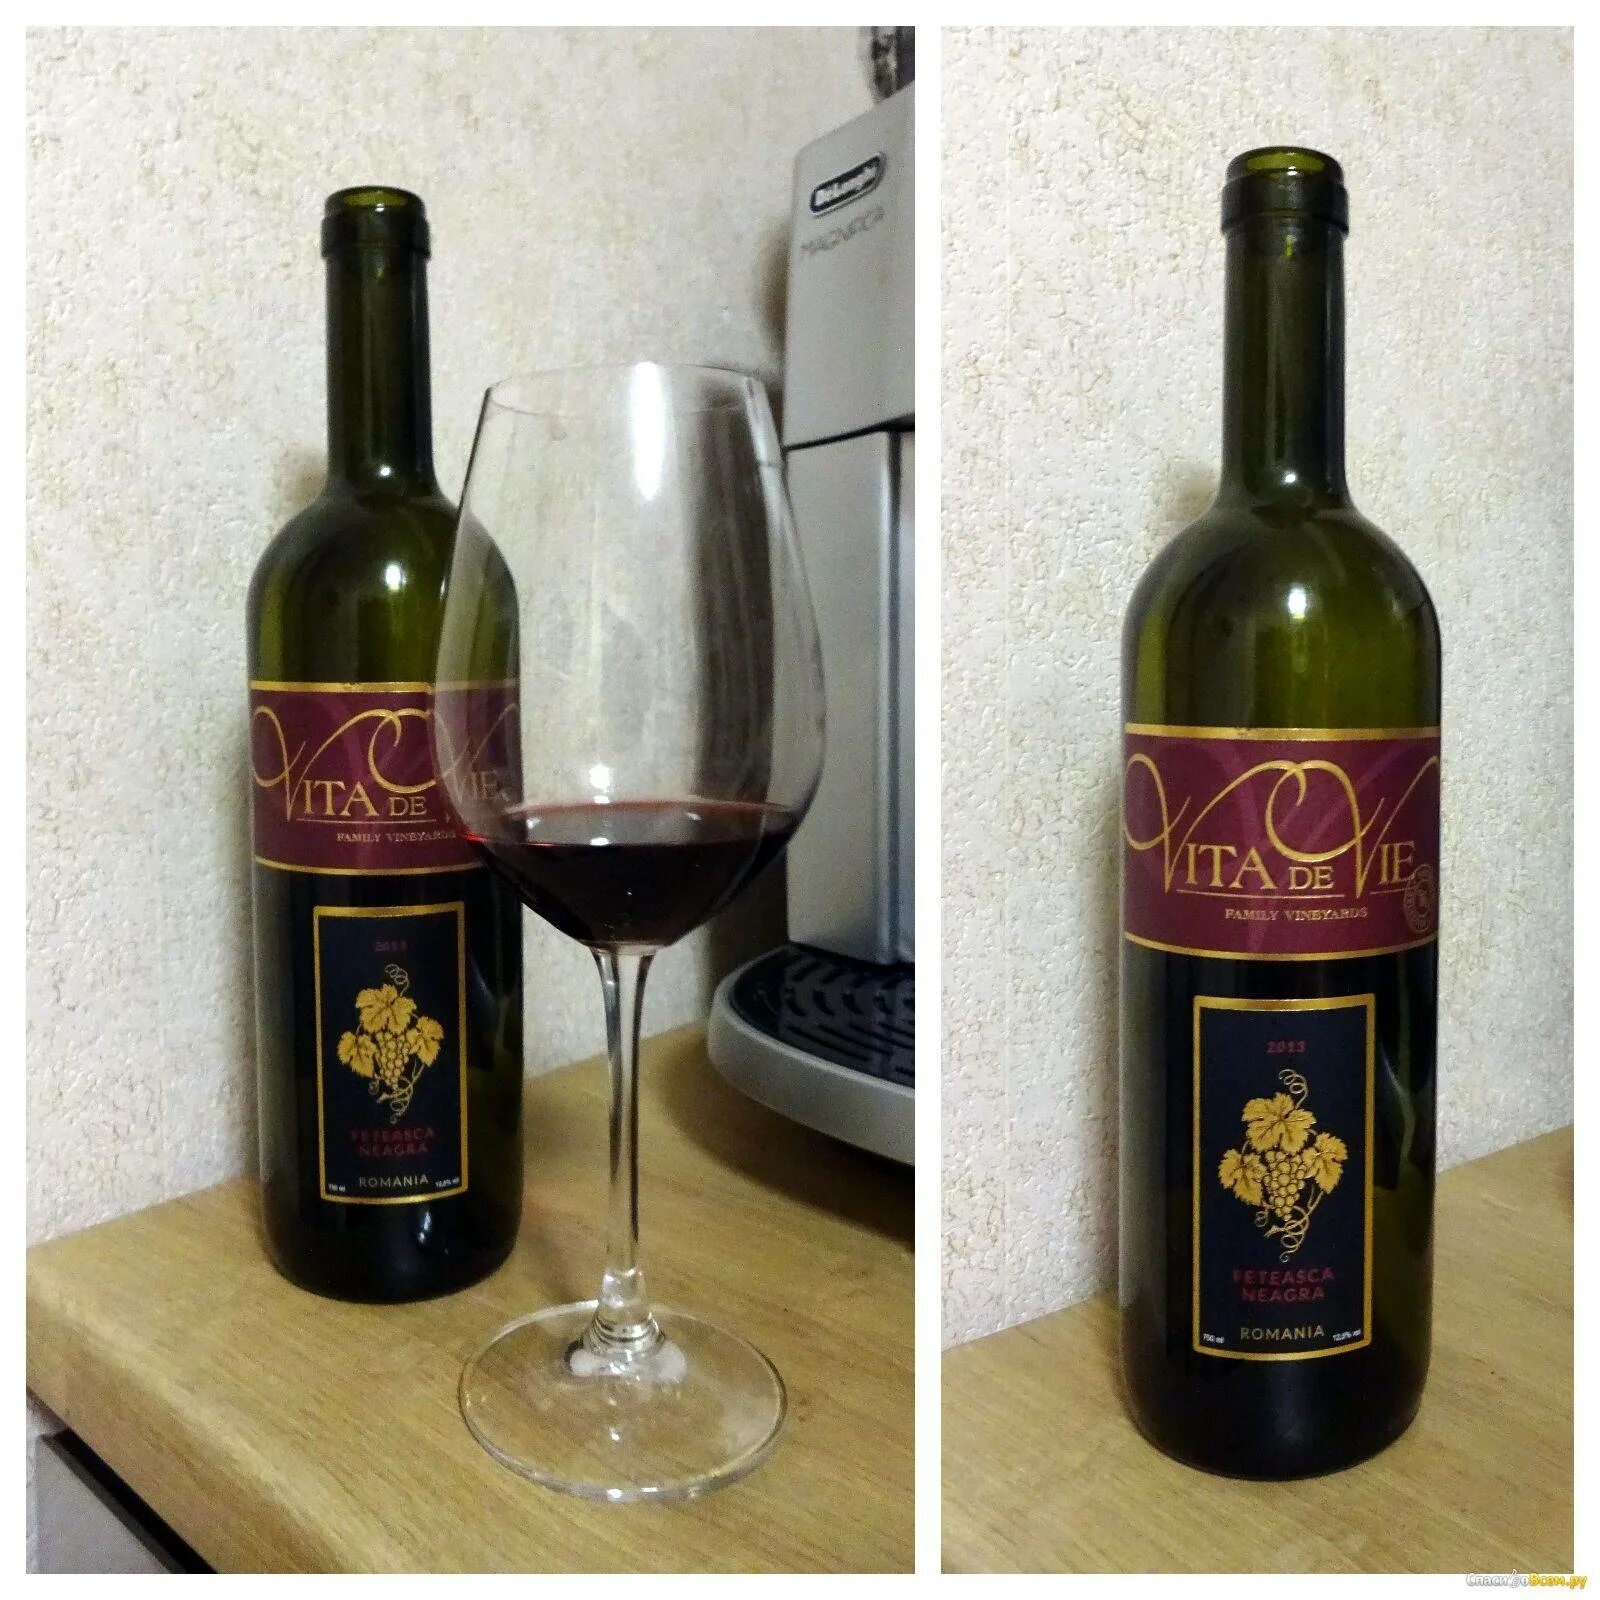 Feteasca neagra вино красное. Вино красное сухое Фетяска. Вино Vita de vie. Недорогие вина. Какое купить вино недорогое